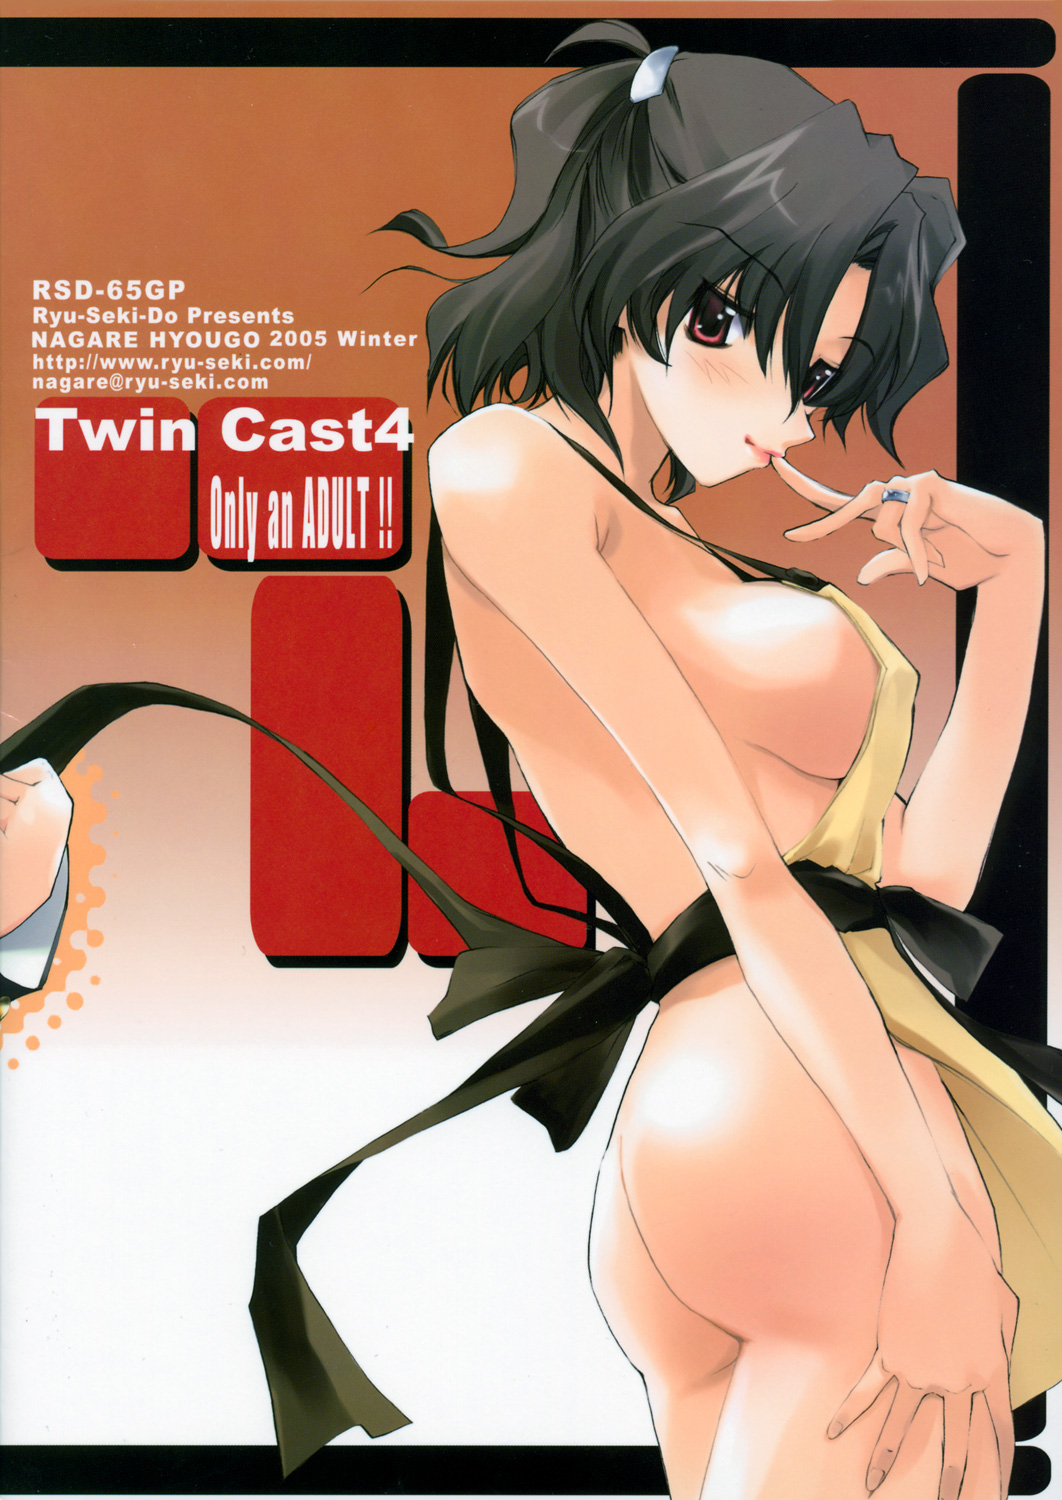 (コミックキャッスル2005) [流石堂 (流ひょうご)] Twin Cast 4 (トゥハート2)